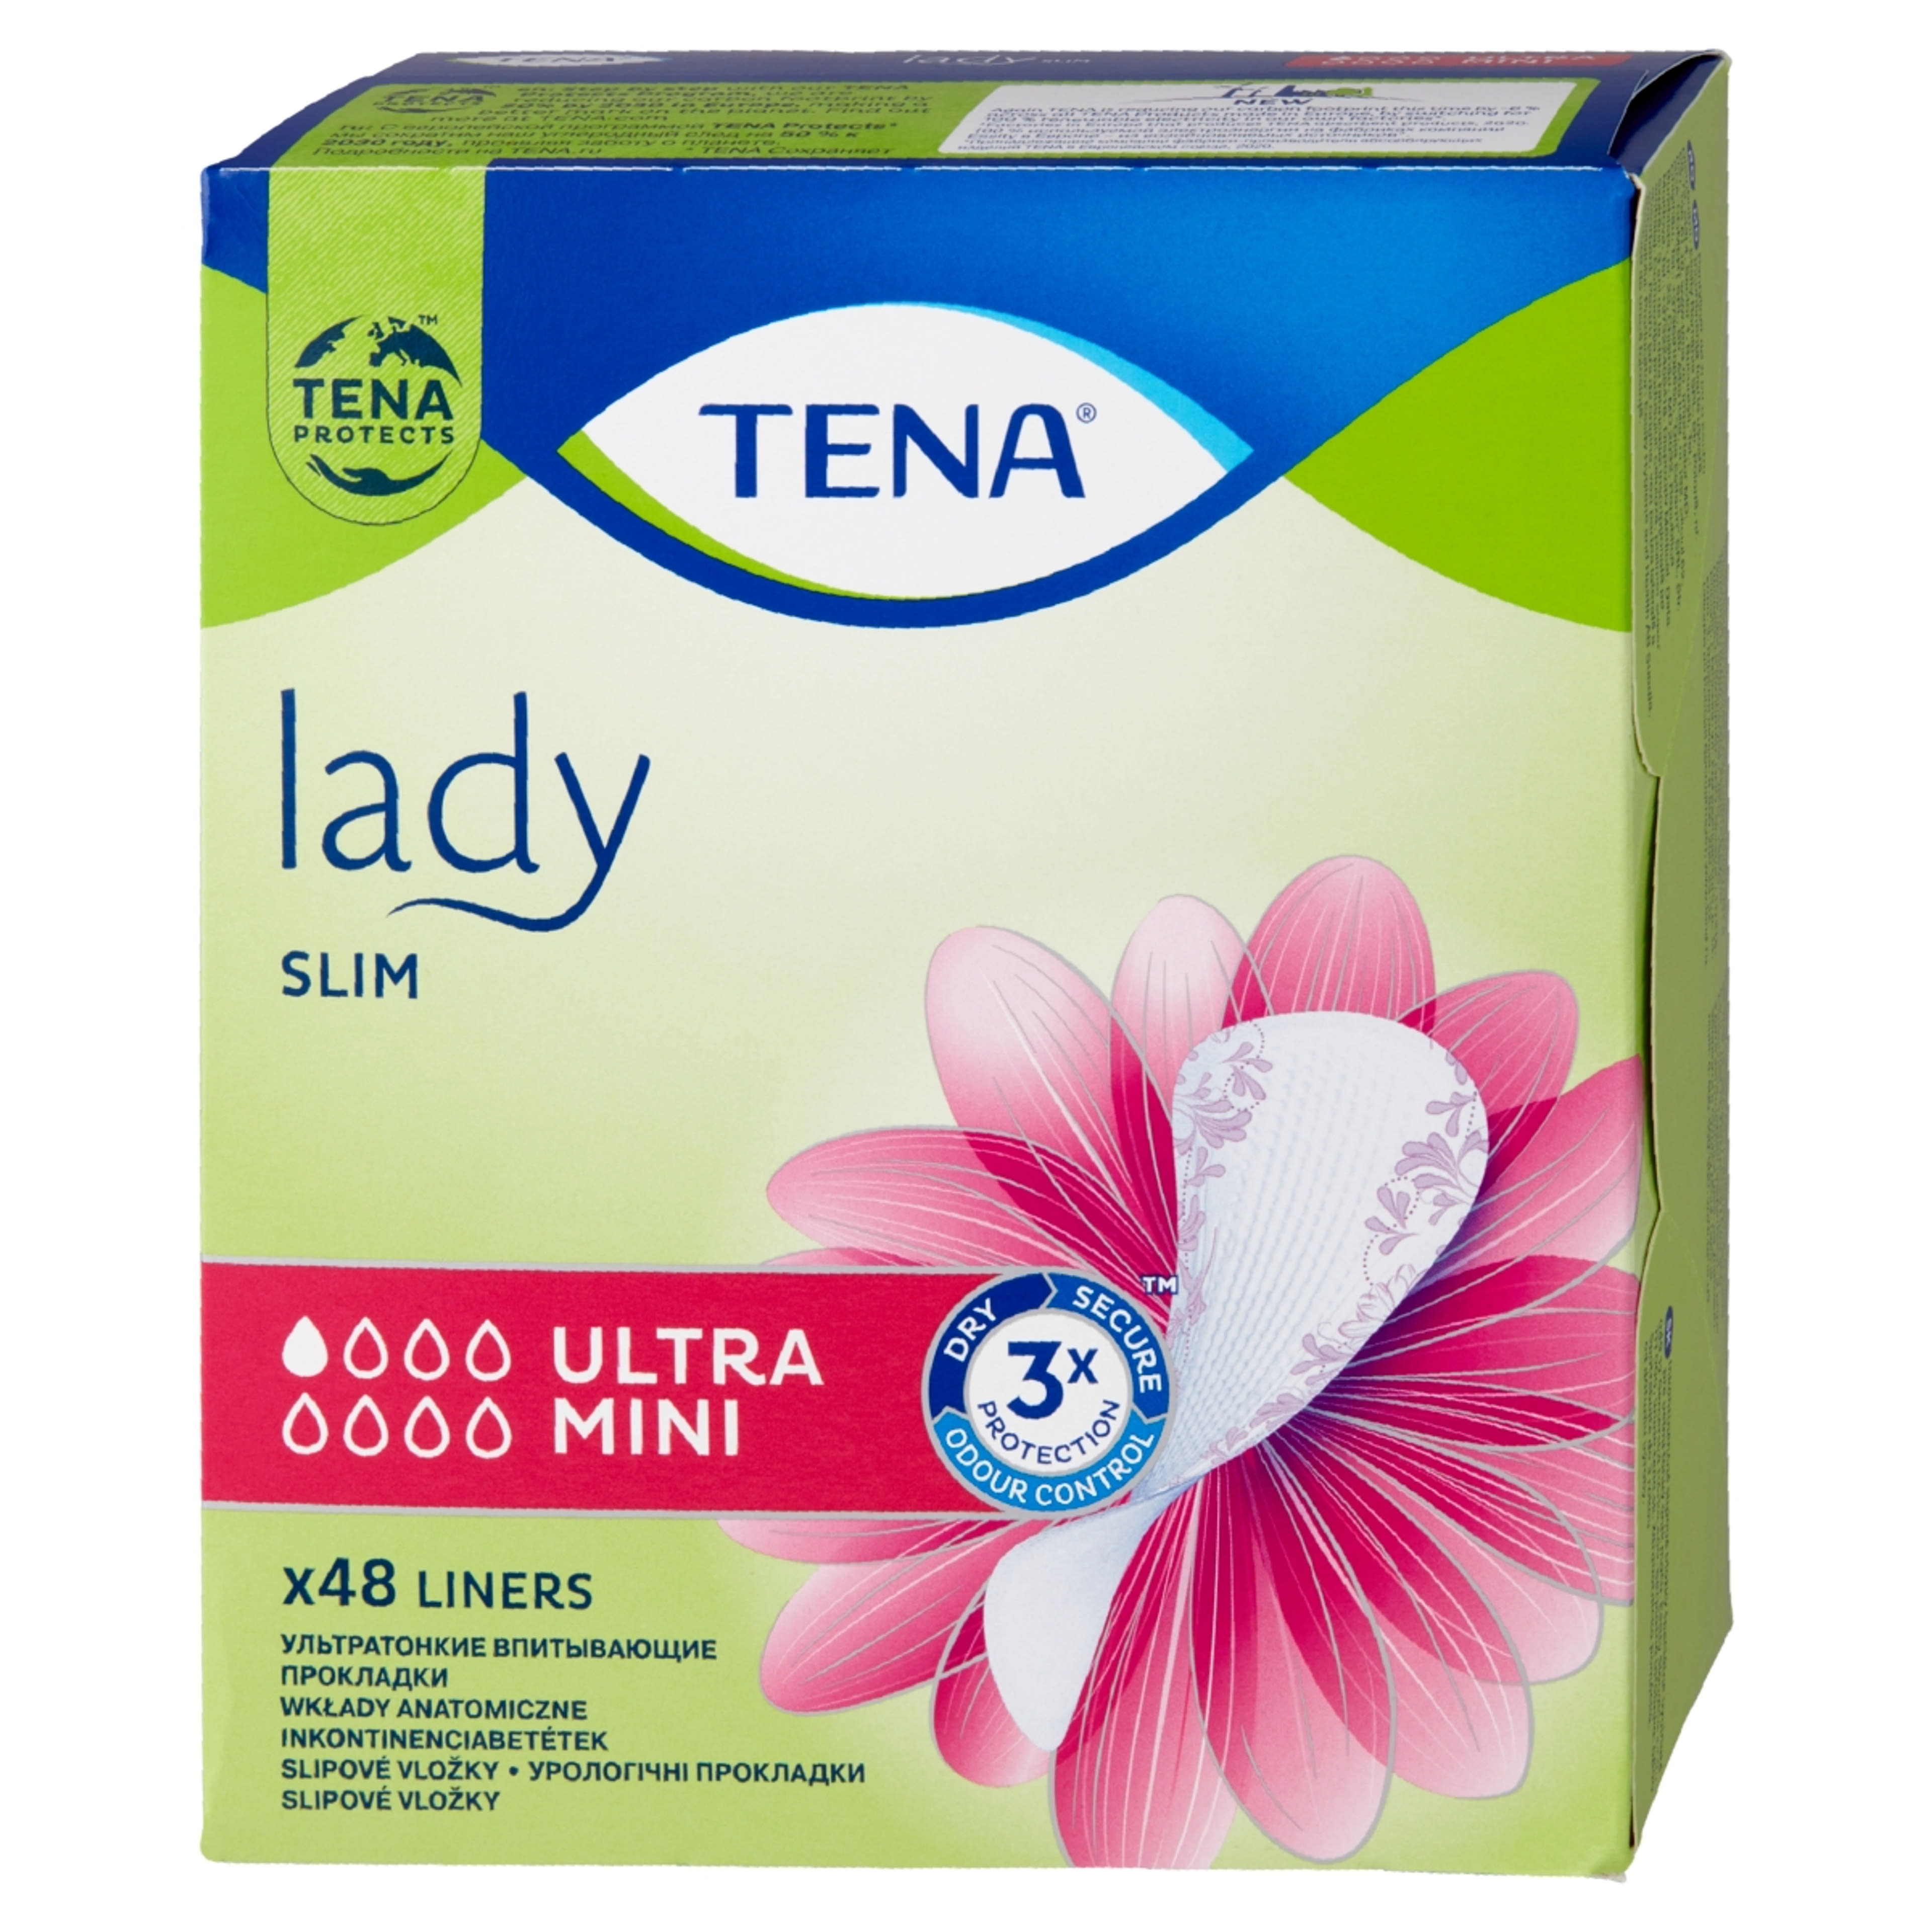 Tena Lady inkontinencia betét ultra mini slim - 1 db-4